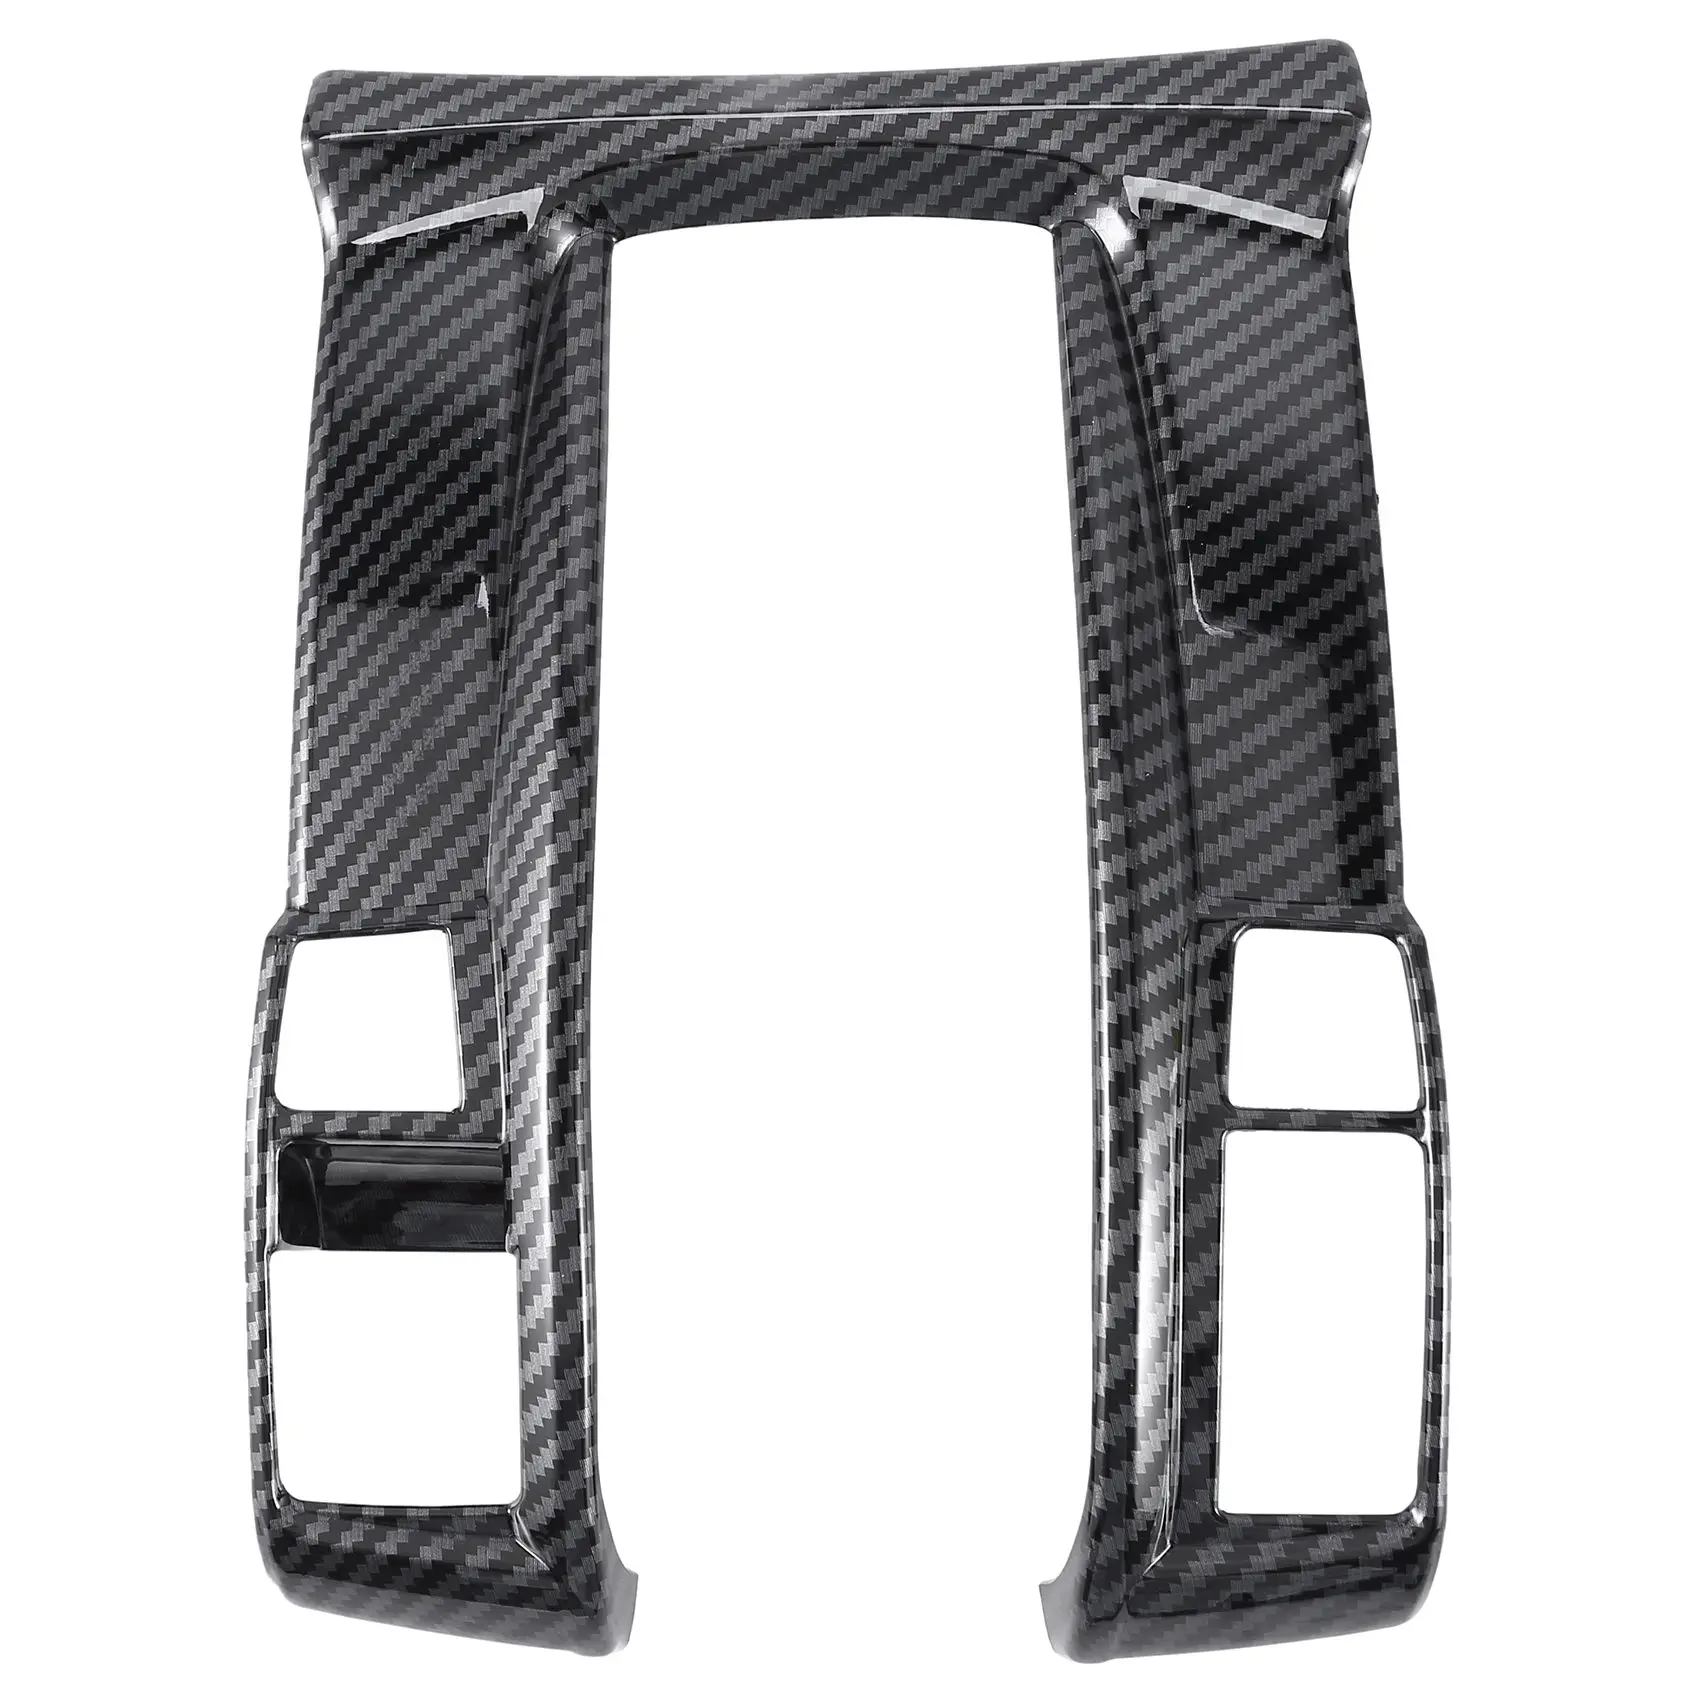 Carbon Fiber Center Console Gear Shift Panel Frame Cover Trim for Honda Civic 2016-2019